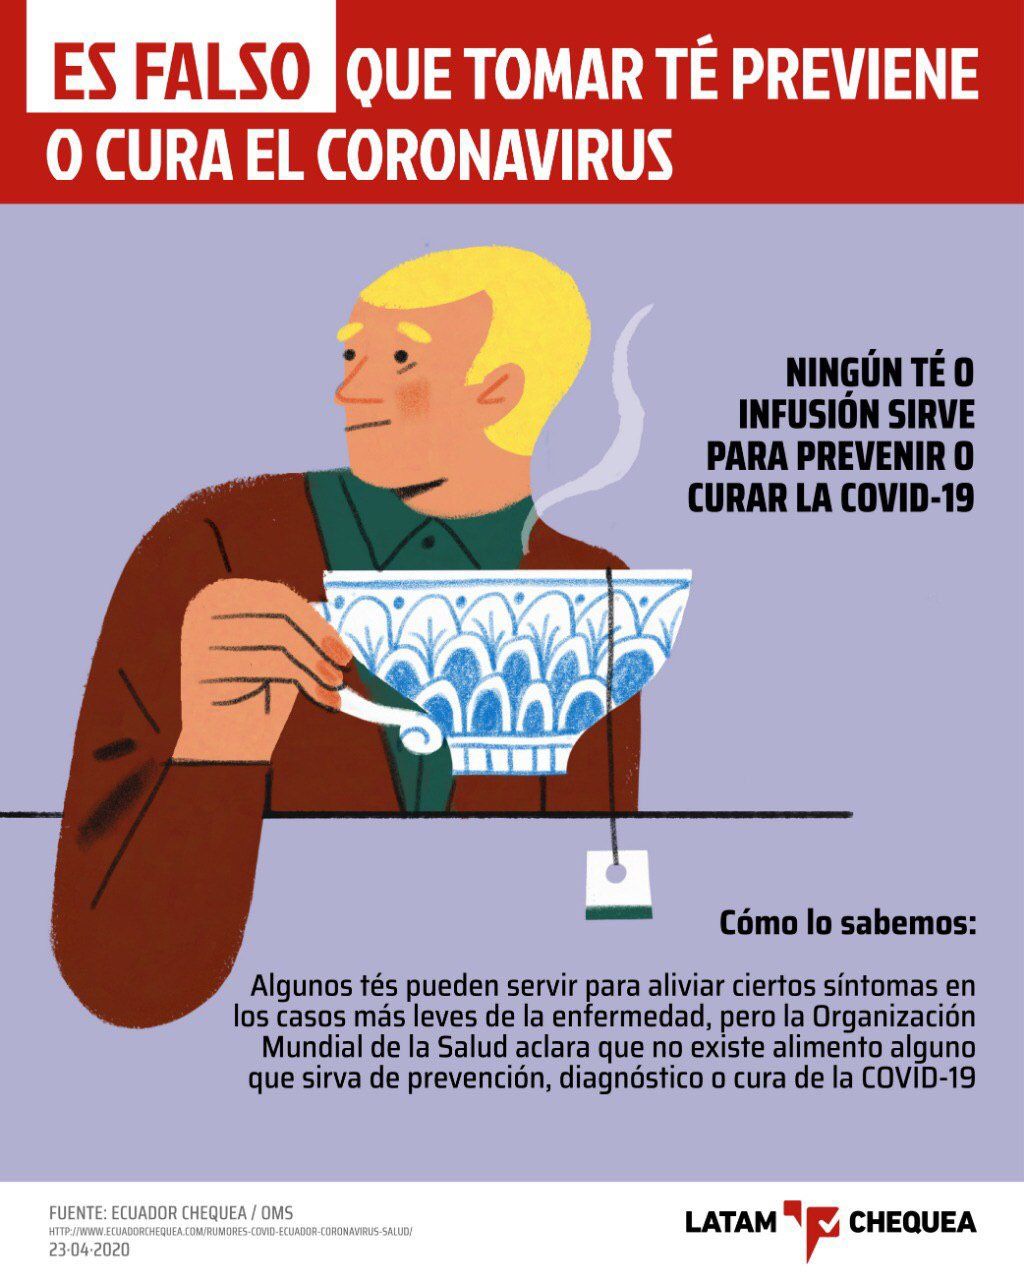 Falsos remedios (ilustrados) contra el coronavirus